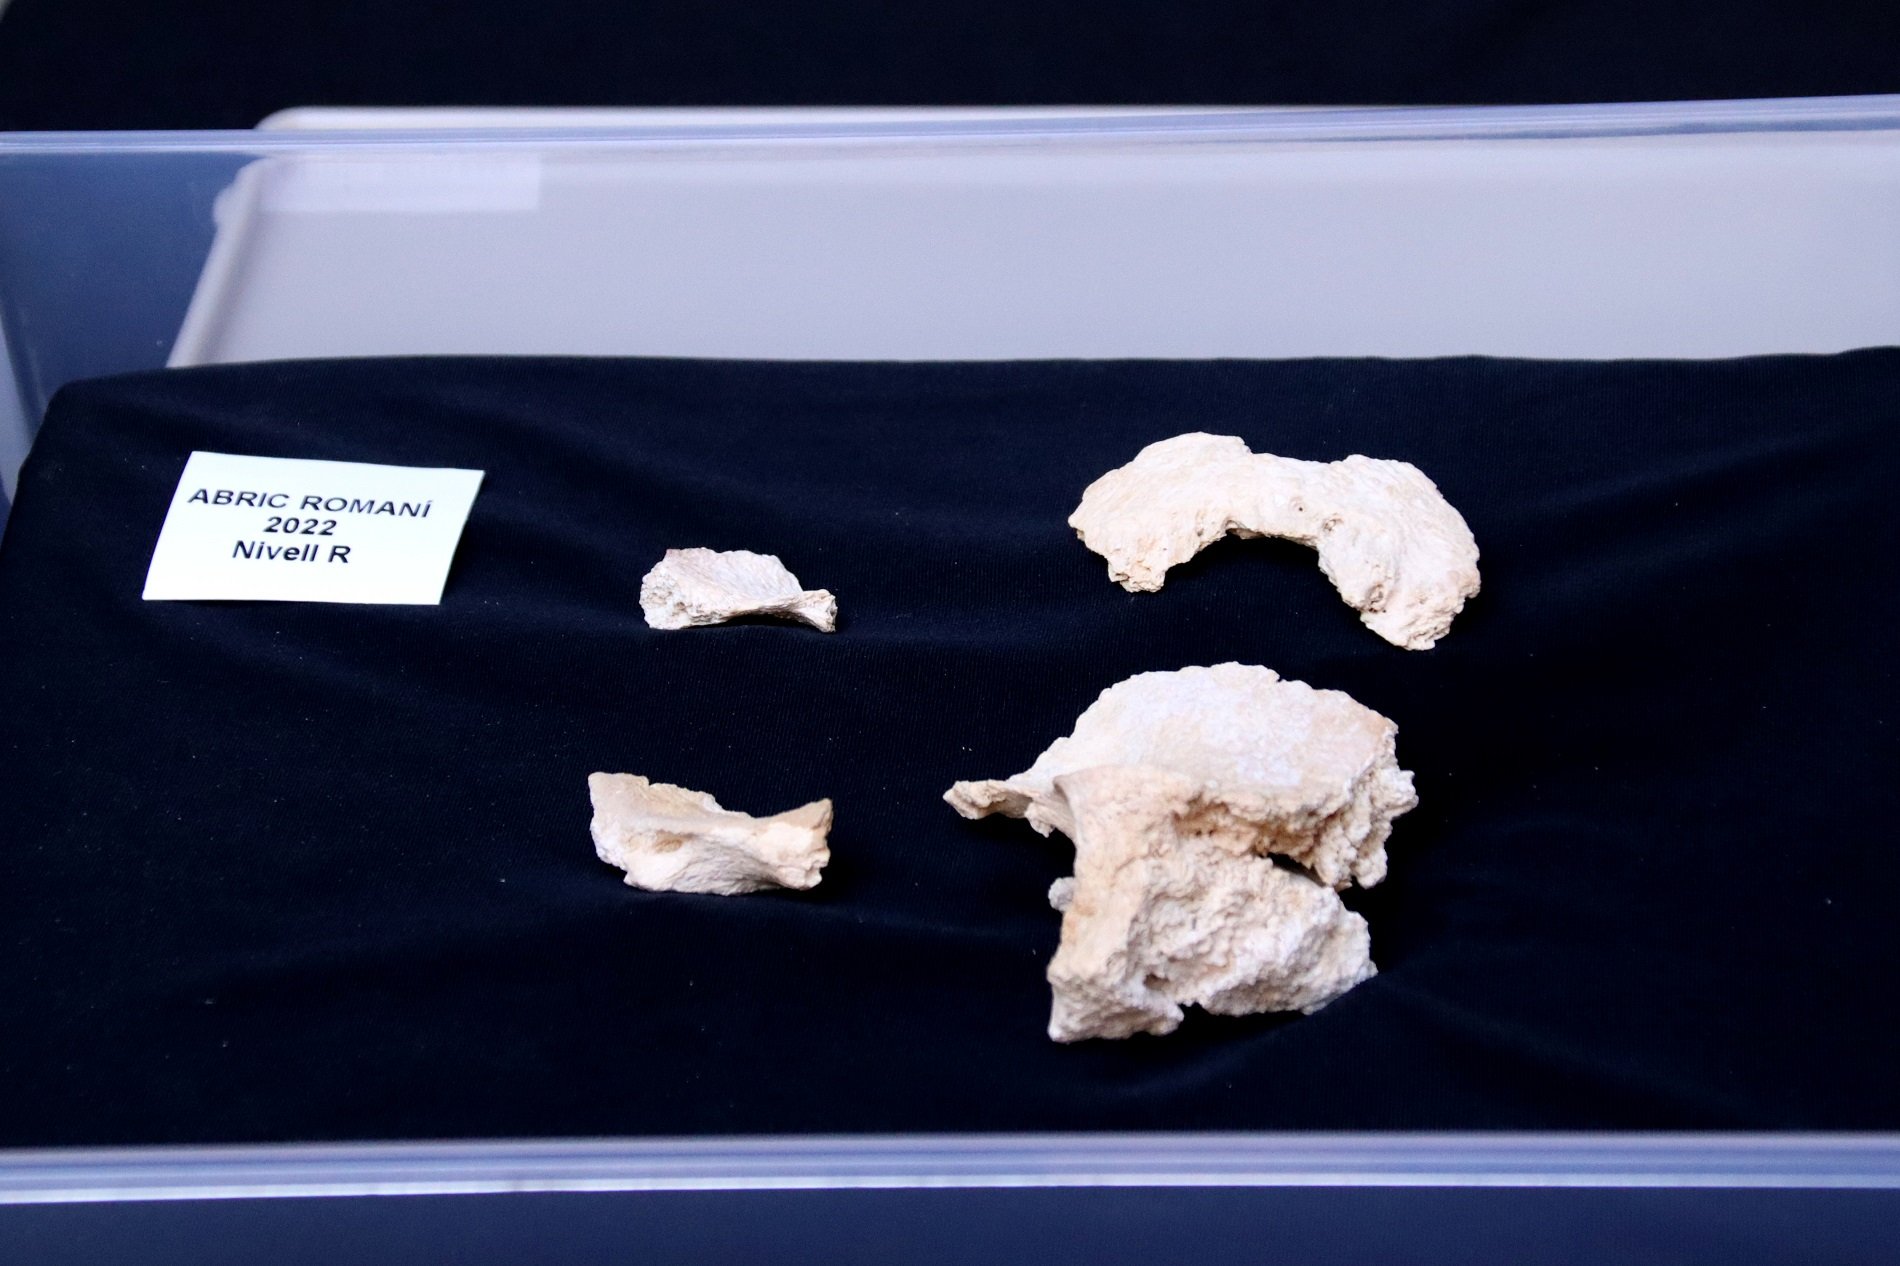 Descobert un crani de neandertal de més de 60.000 anys a Capellades